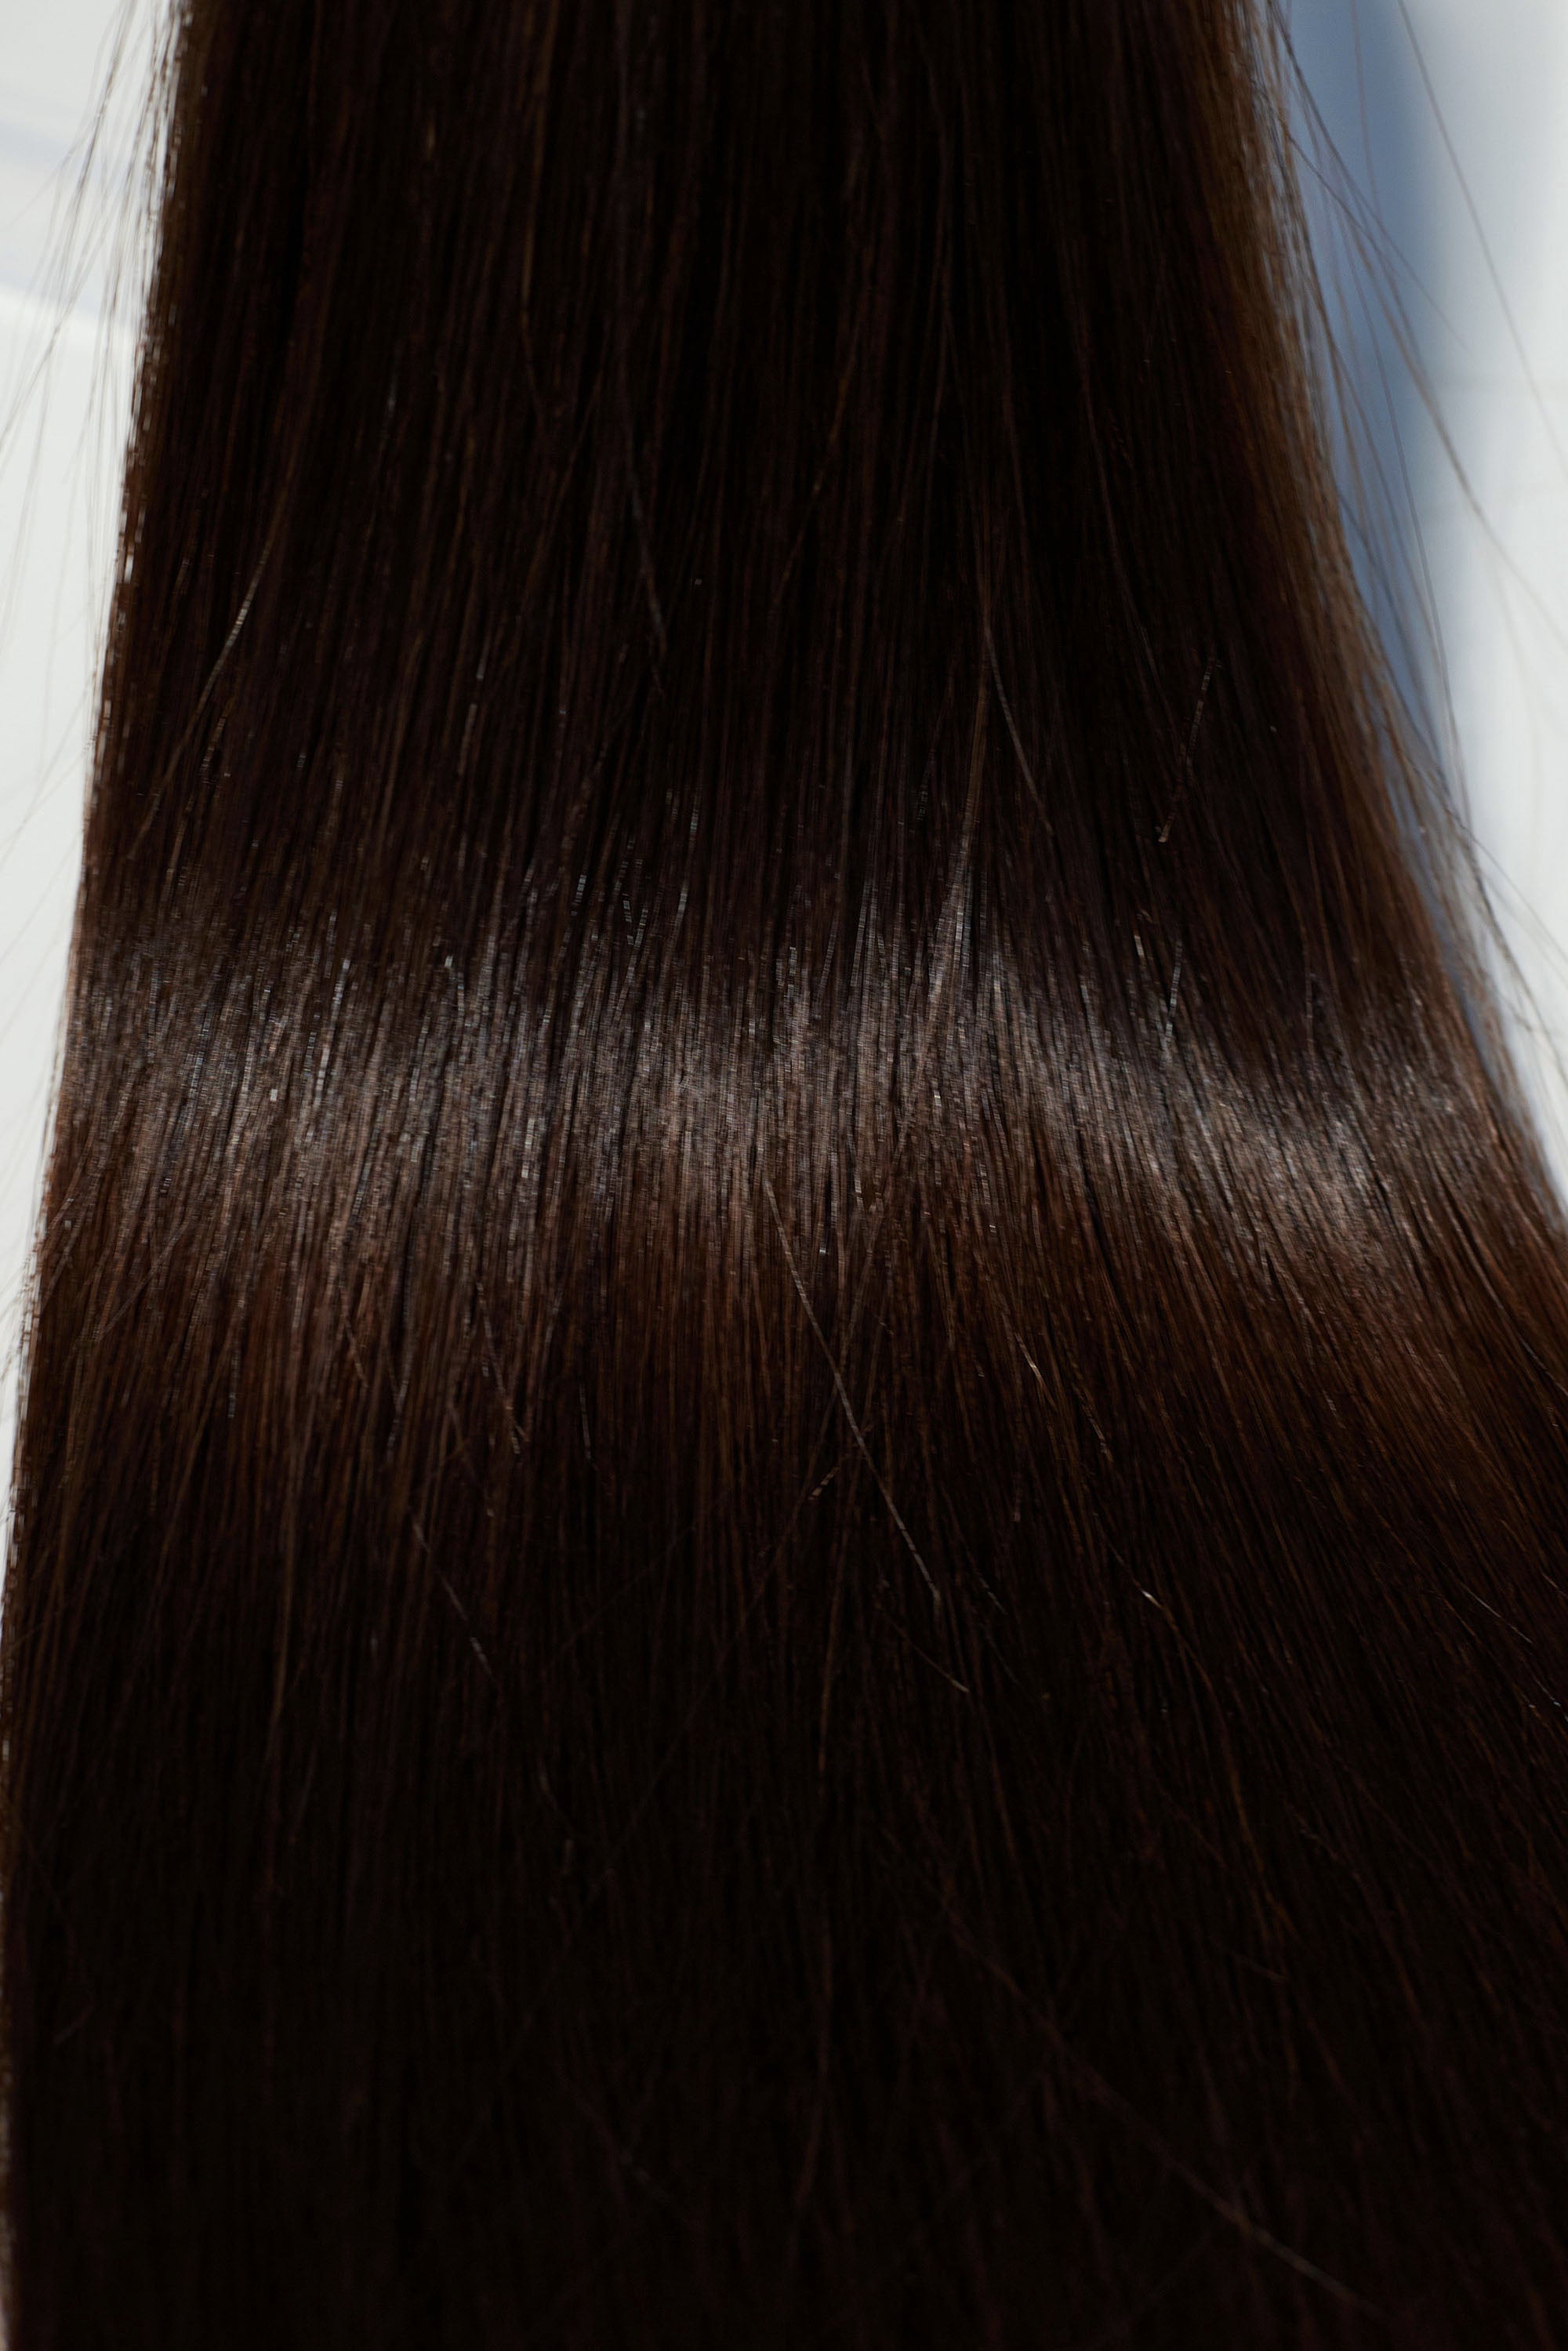 Behair professional Keratin Tip "Premium" 24" (60cm) Natural Straight Dark Coffee Brown #2 - 25g (Micro - 0.5g each pcs) hair extensions